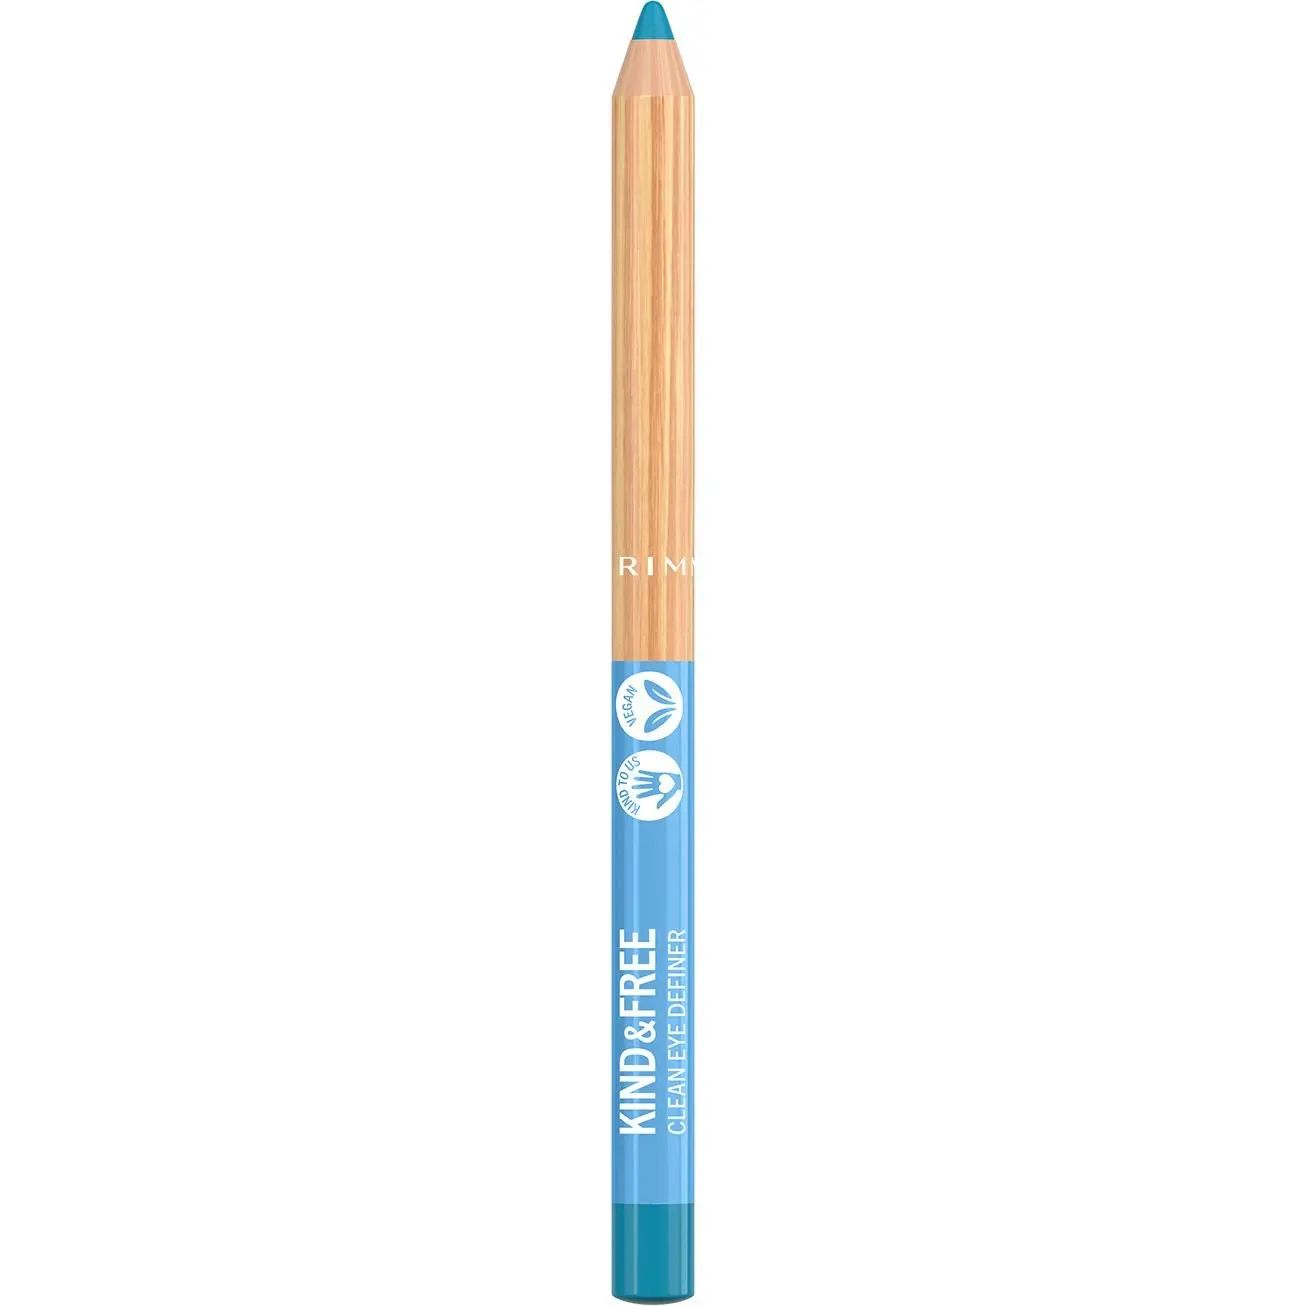 Олівець для очей Rimmel Kind & Free відтінок 006 (Anime Blue) 1.1 г - фото 2